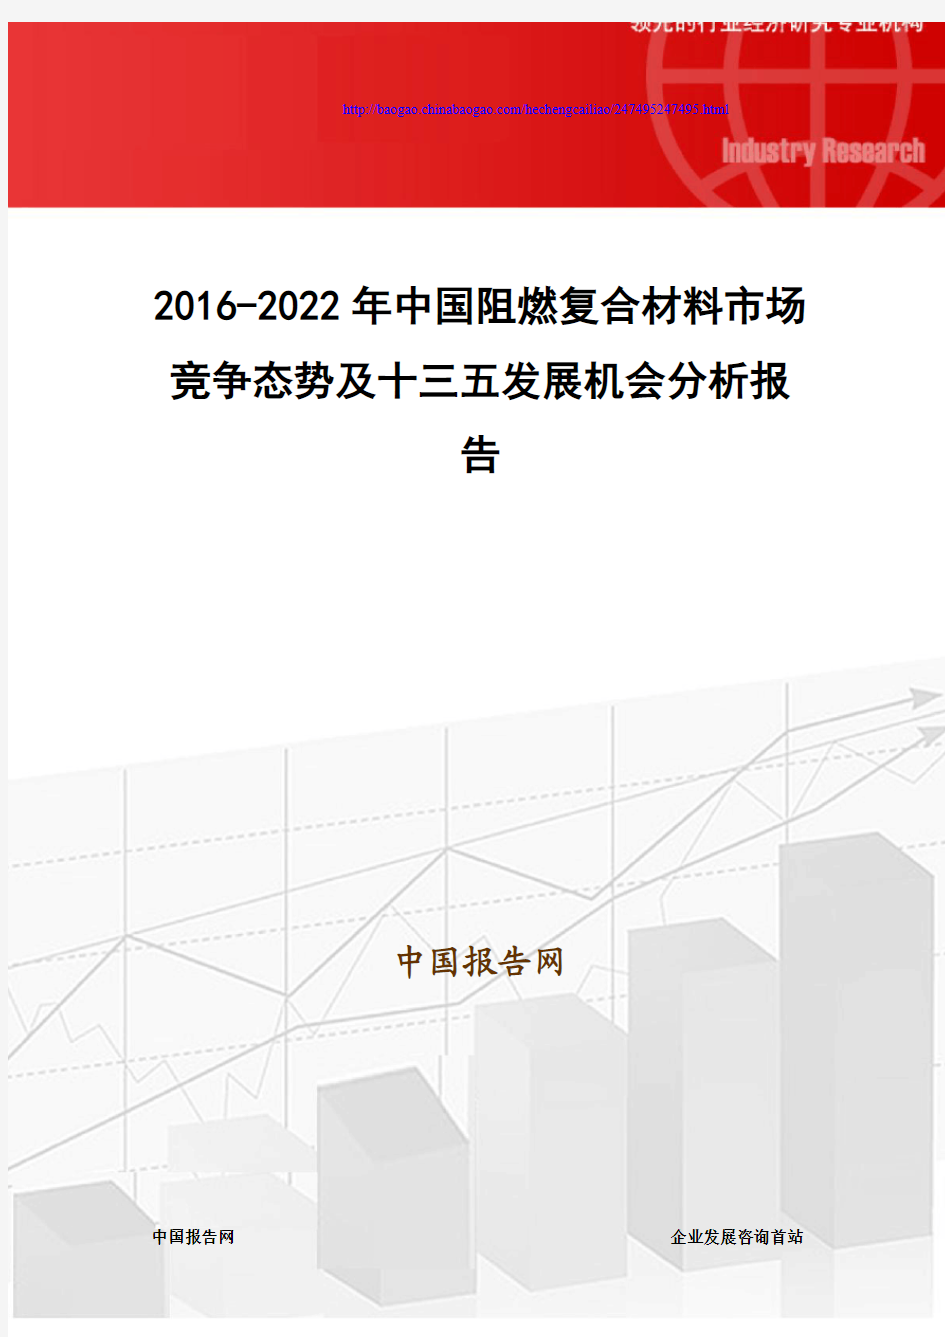 2016-2022年中国阻燃复合材料市场竞争态势及十三五发展机会分析报告